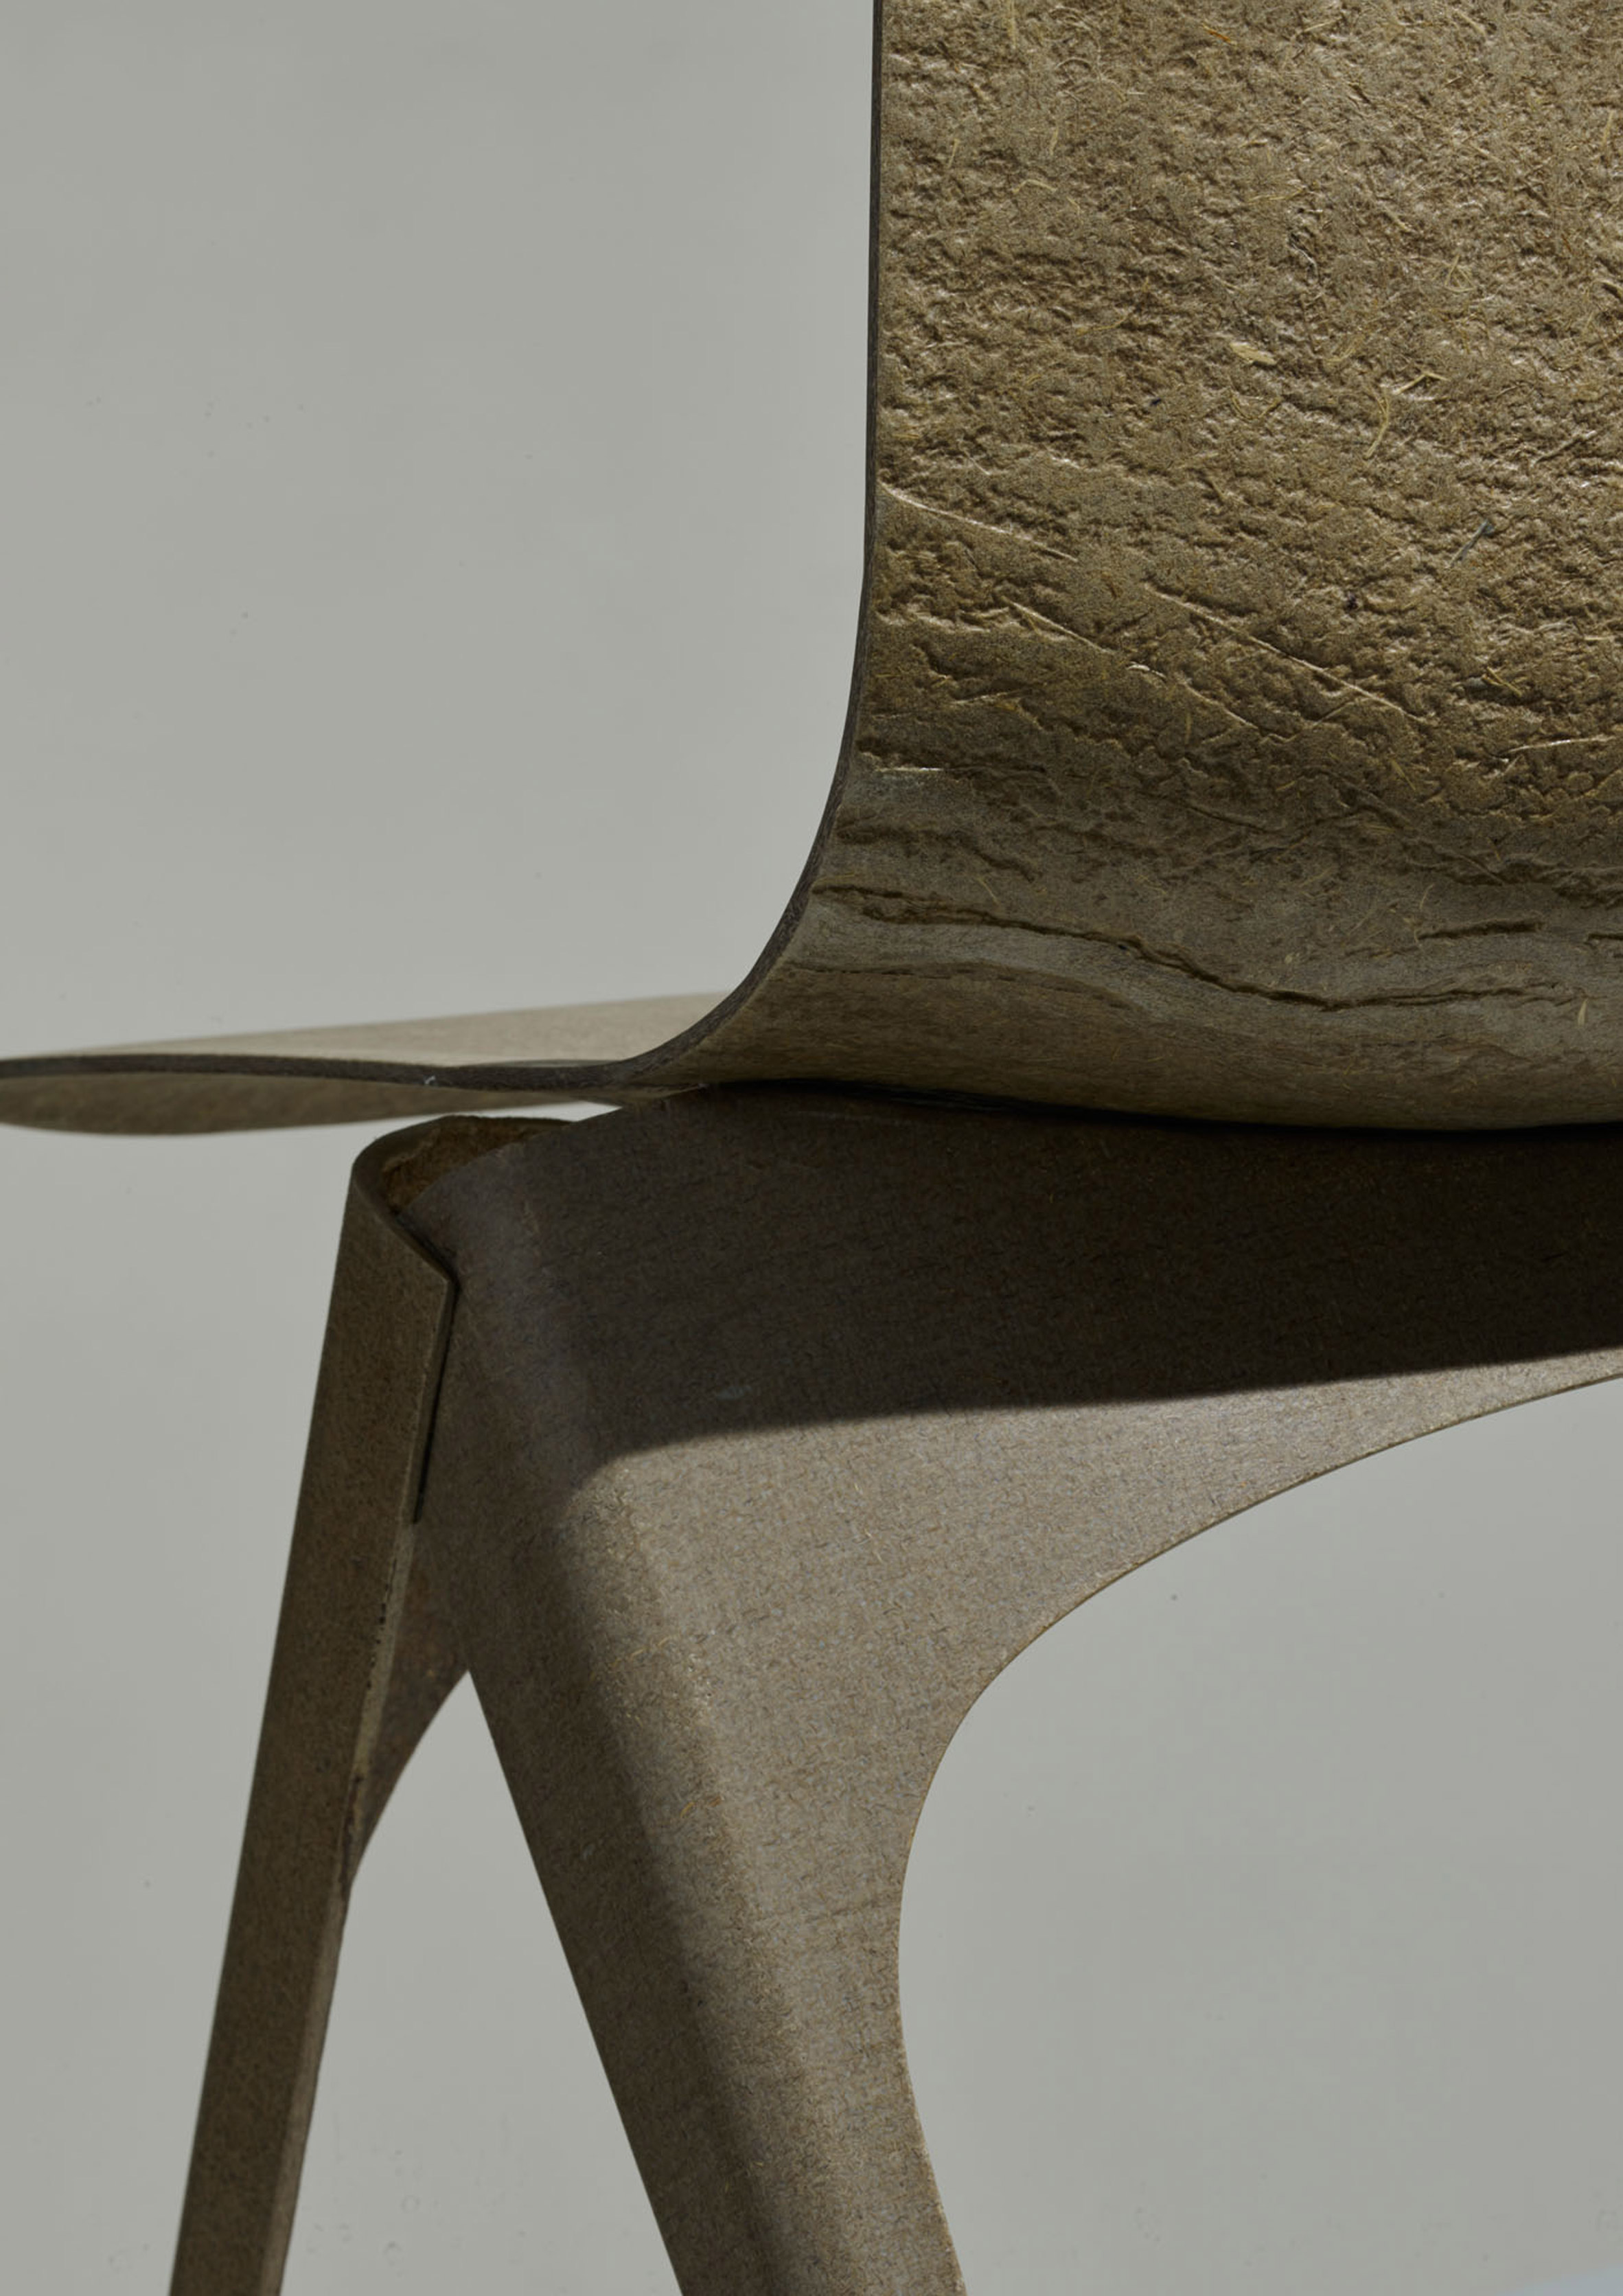 flax-chair-furniture-design-christien-meindertsma-bio-plastic-fiber-enkev-dutch-design-week-2016_dezeen_2364_col_2